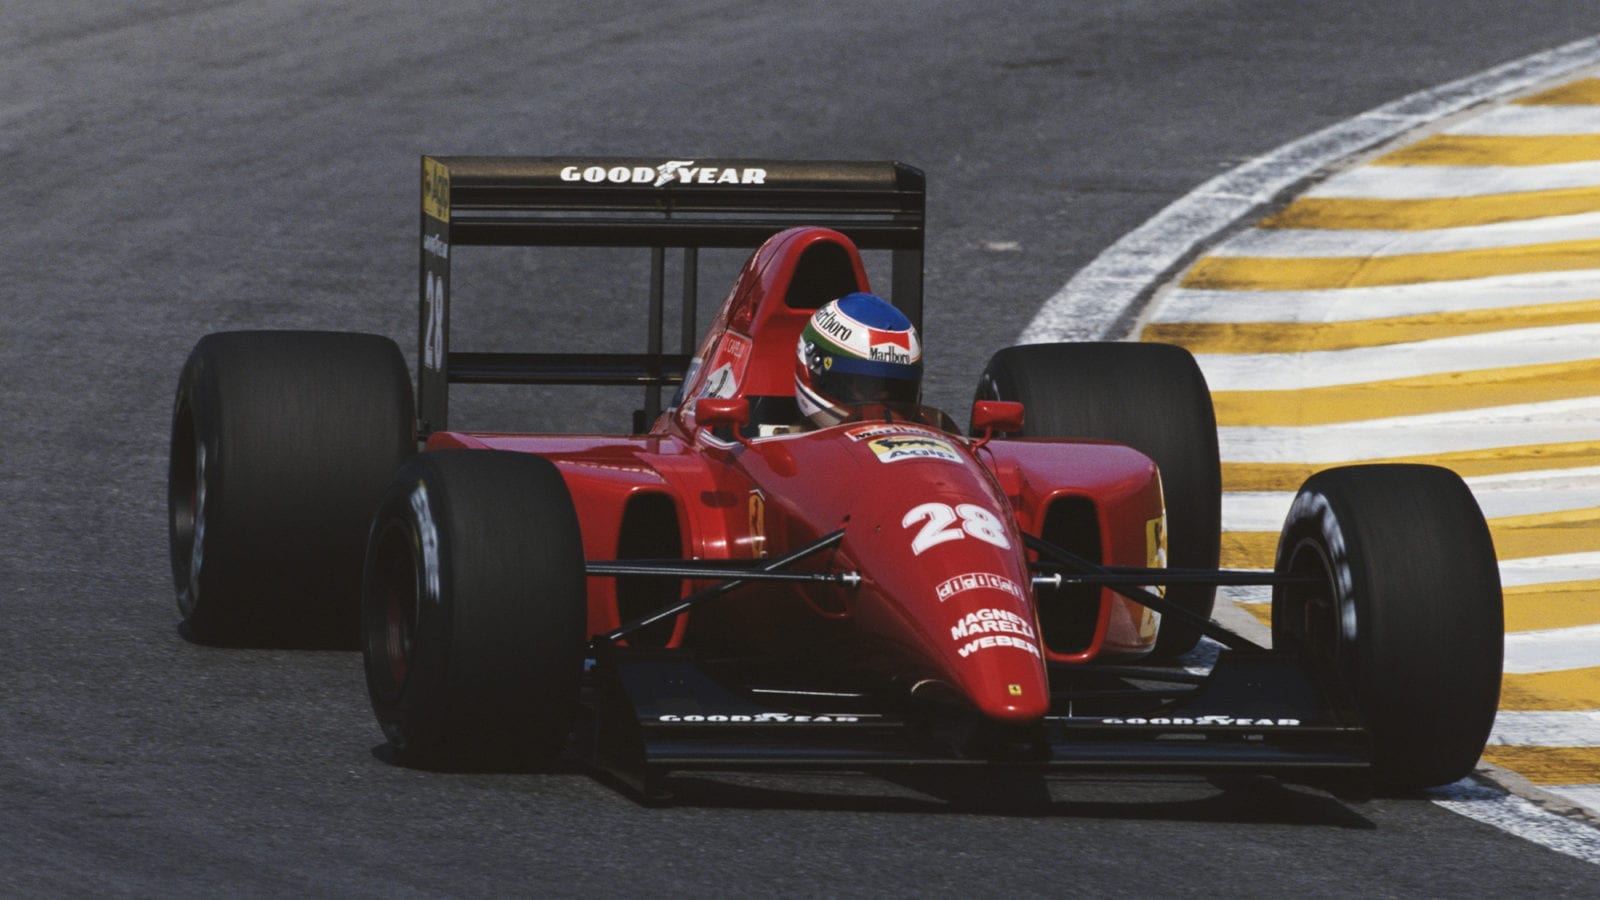 Ivan Capelli drives the 1992 Ferrari F92A in the 1992 F1 Brazilian Grand Prix